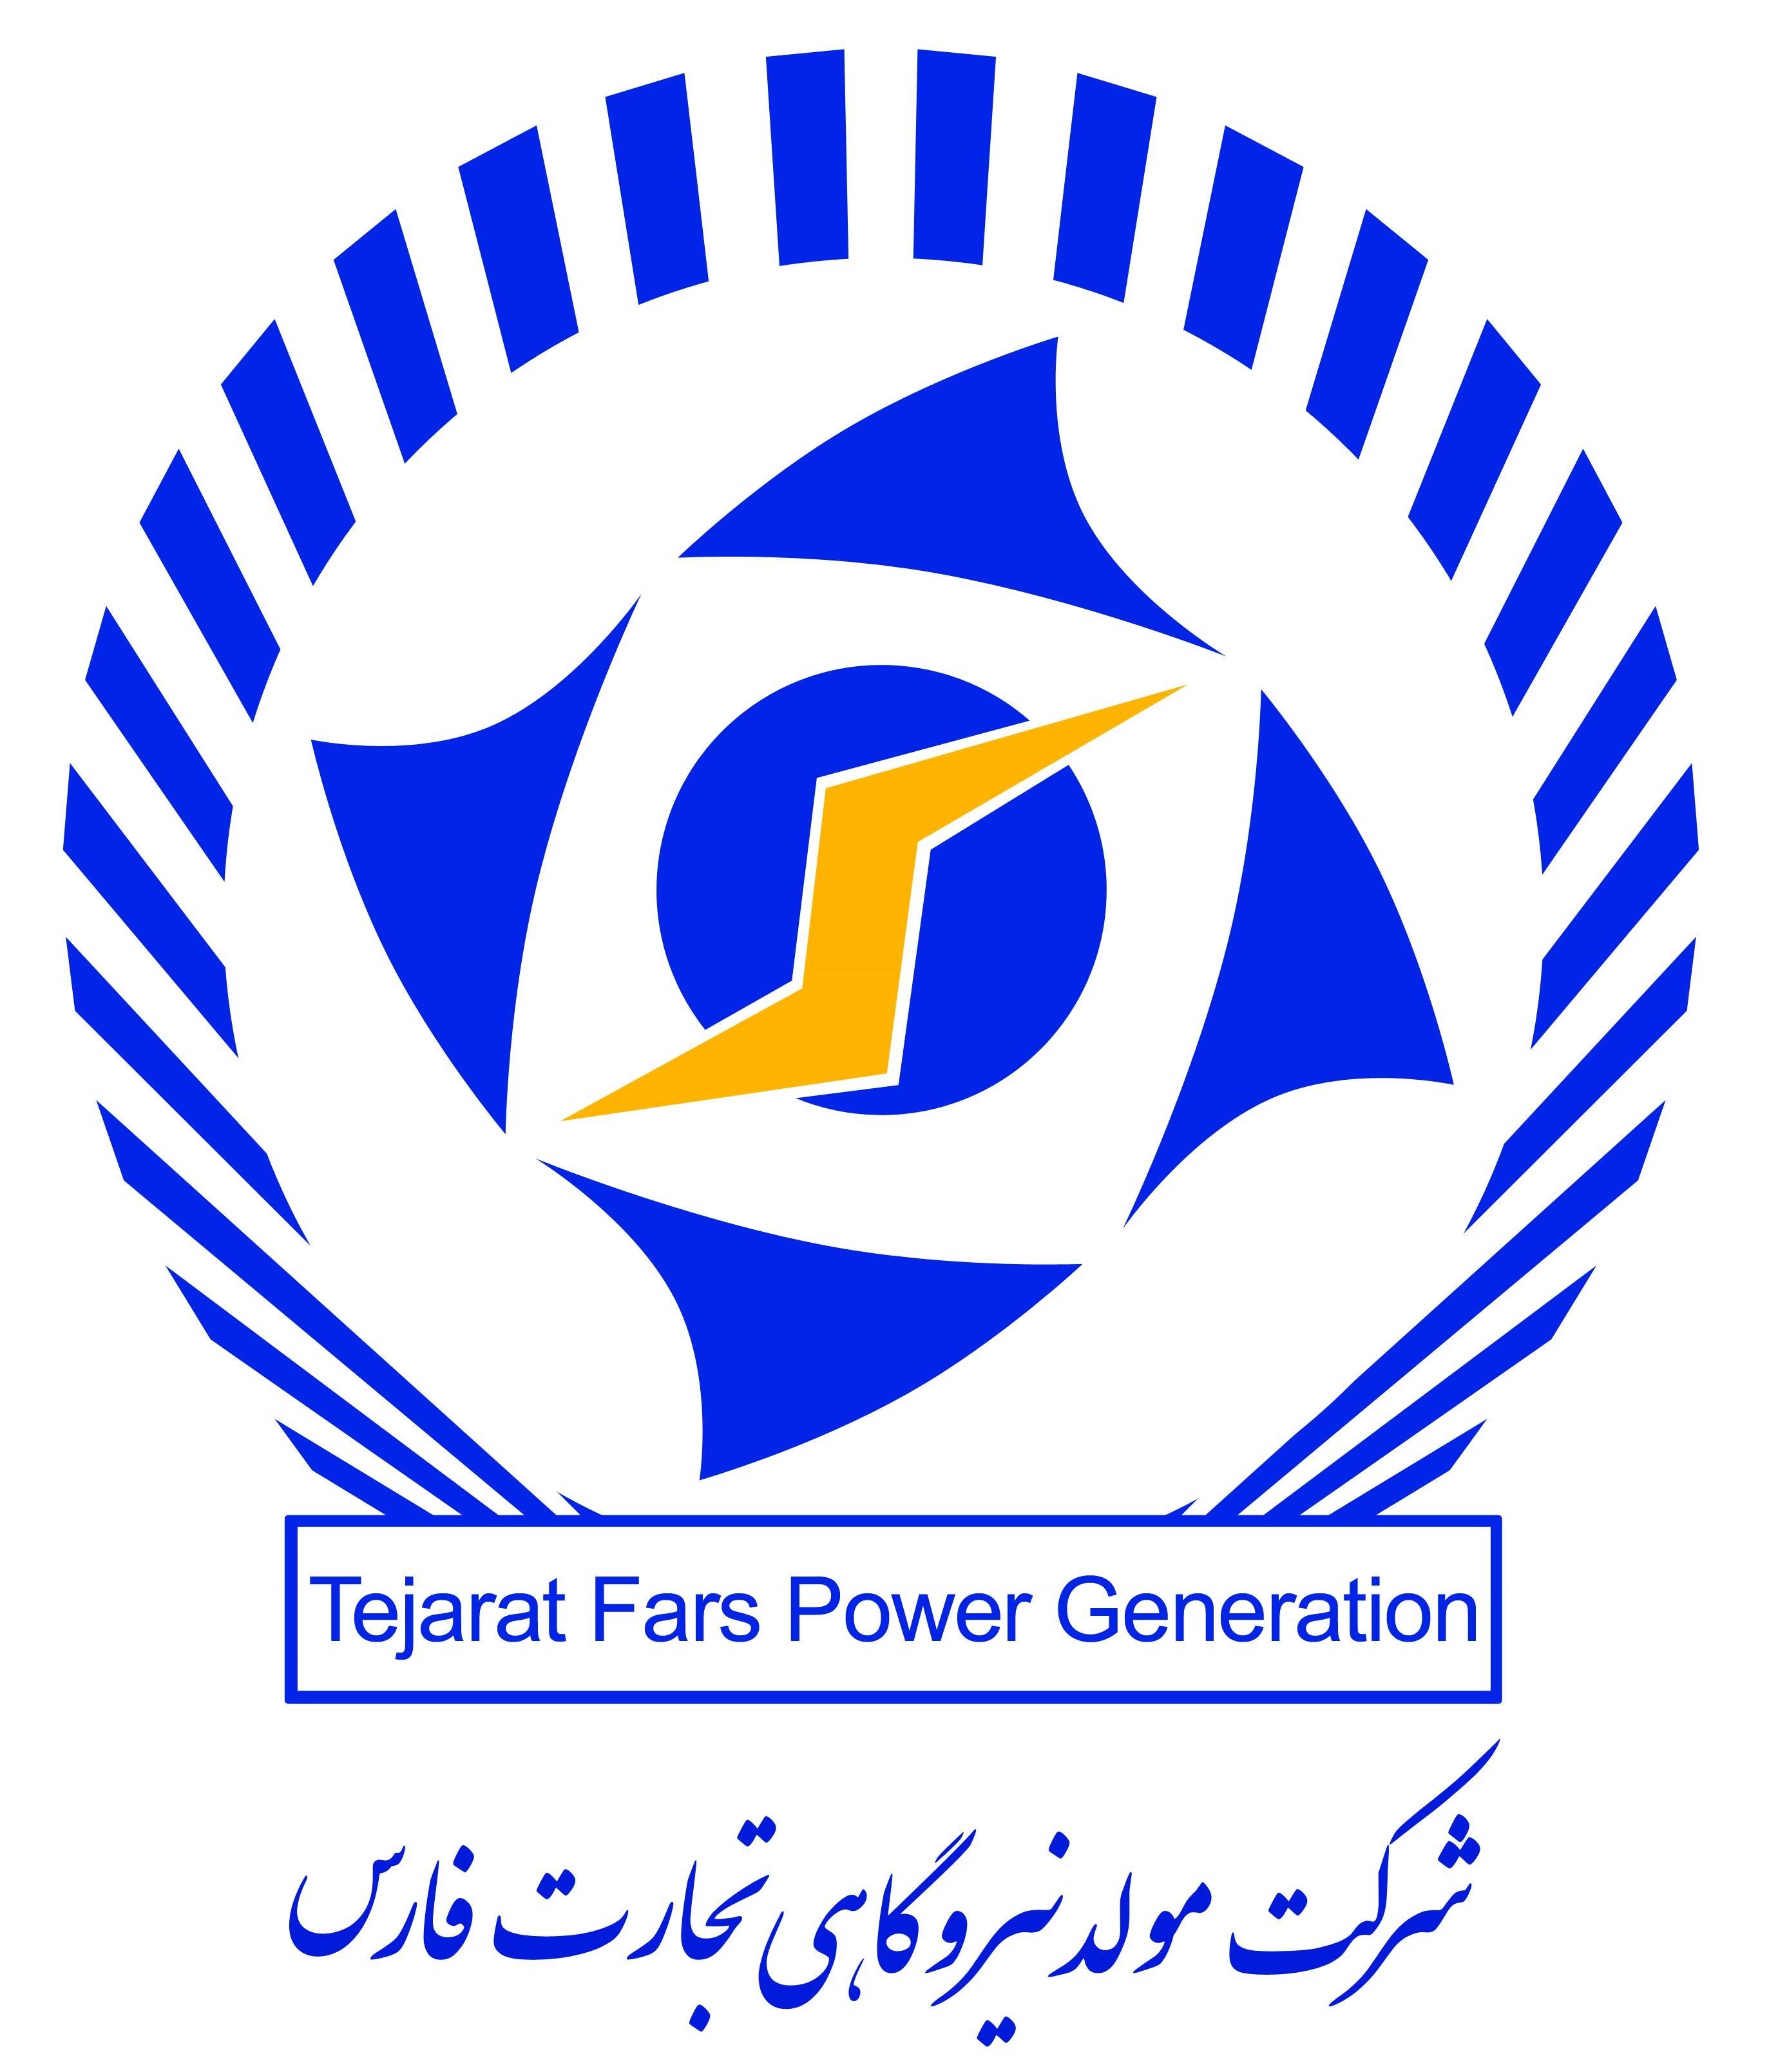 مسئول دفتر | Office Manager - مولد نیروگاهی تجارت فارس | Tejarat Fars power Generation